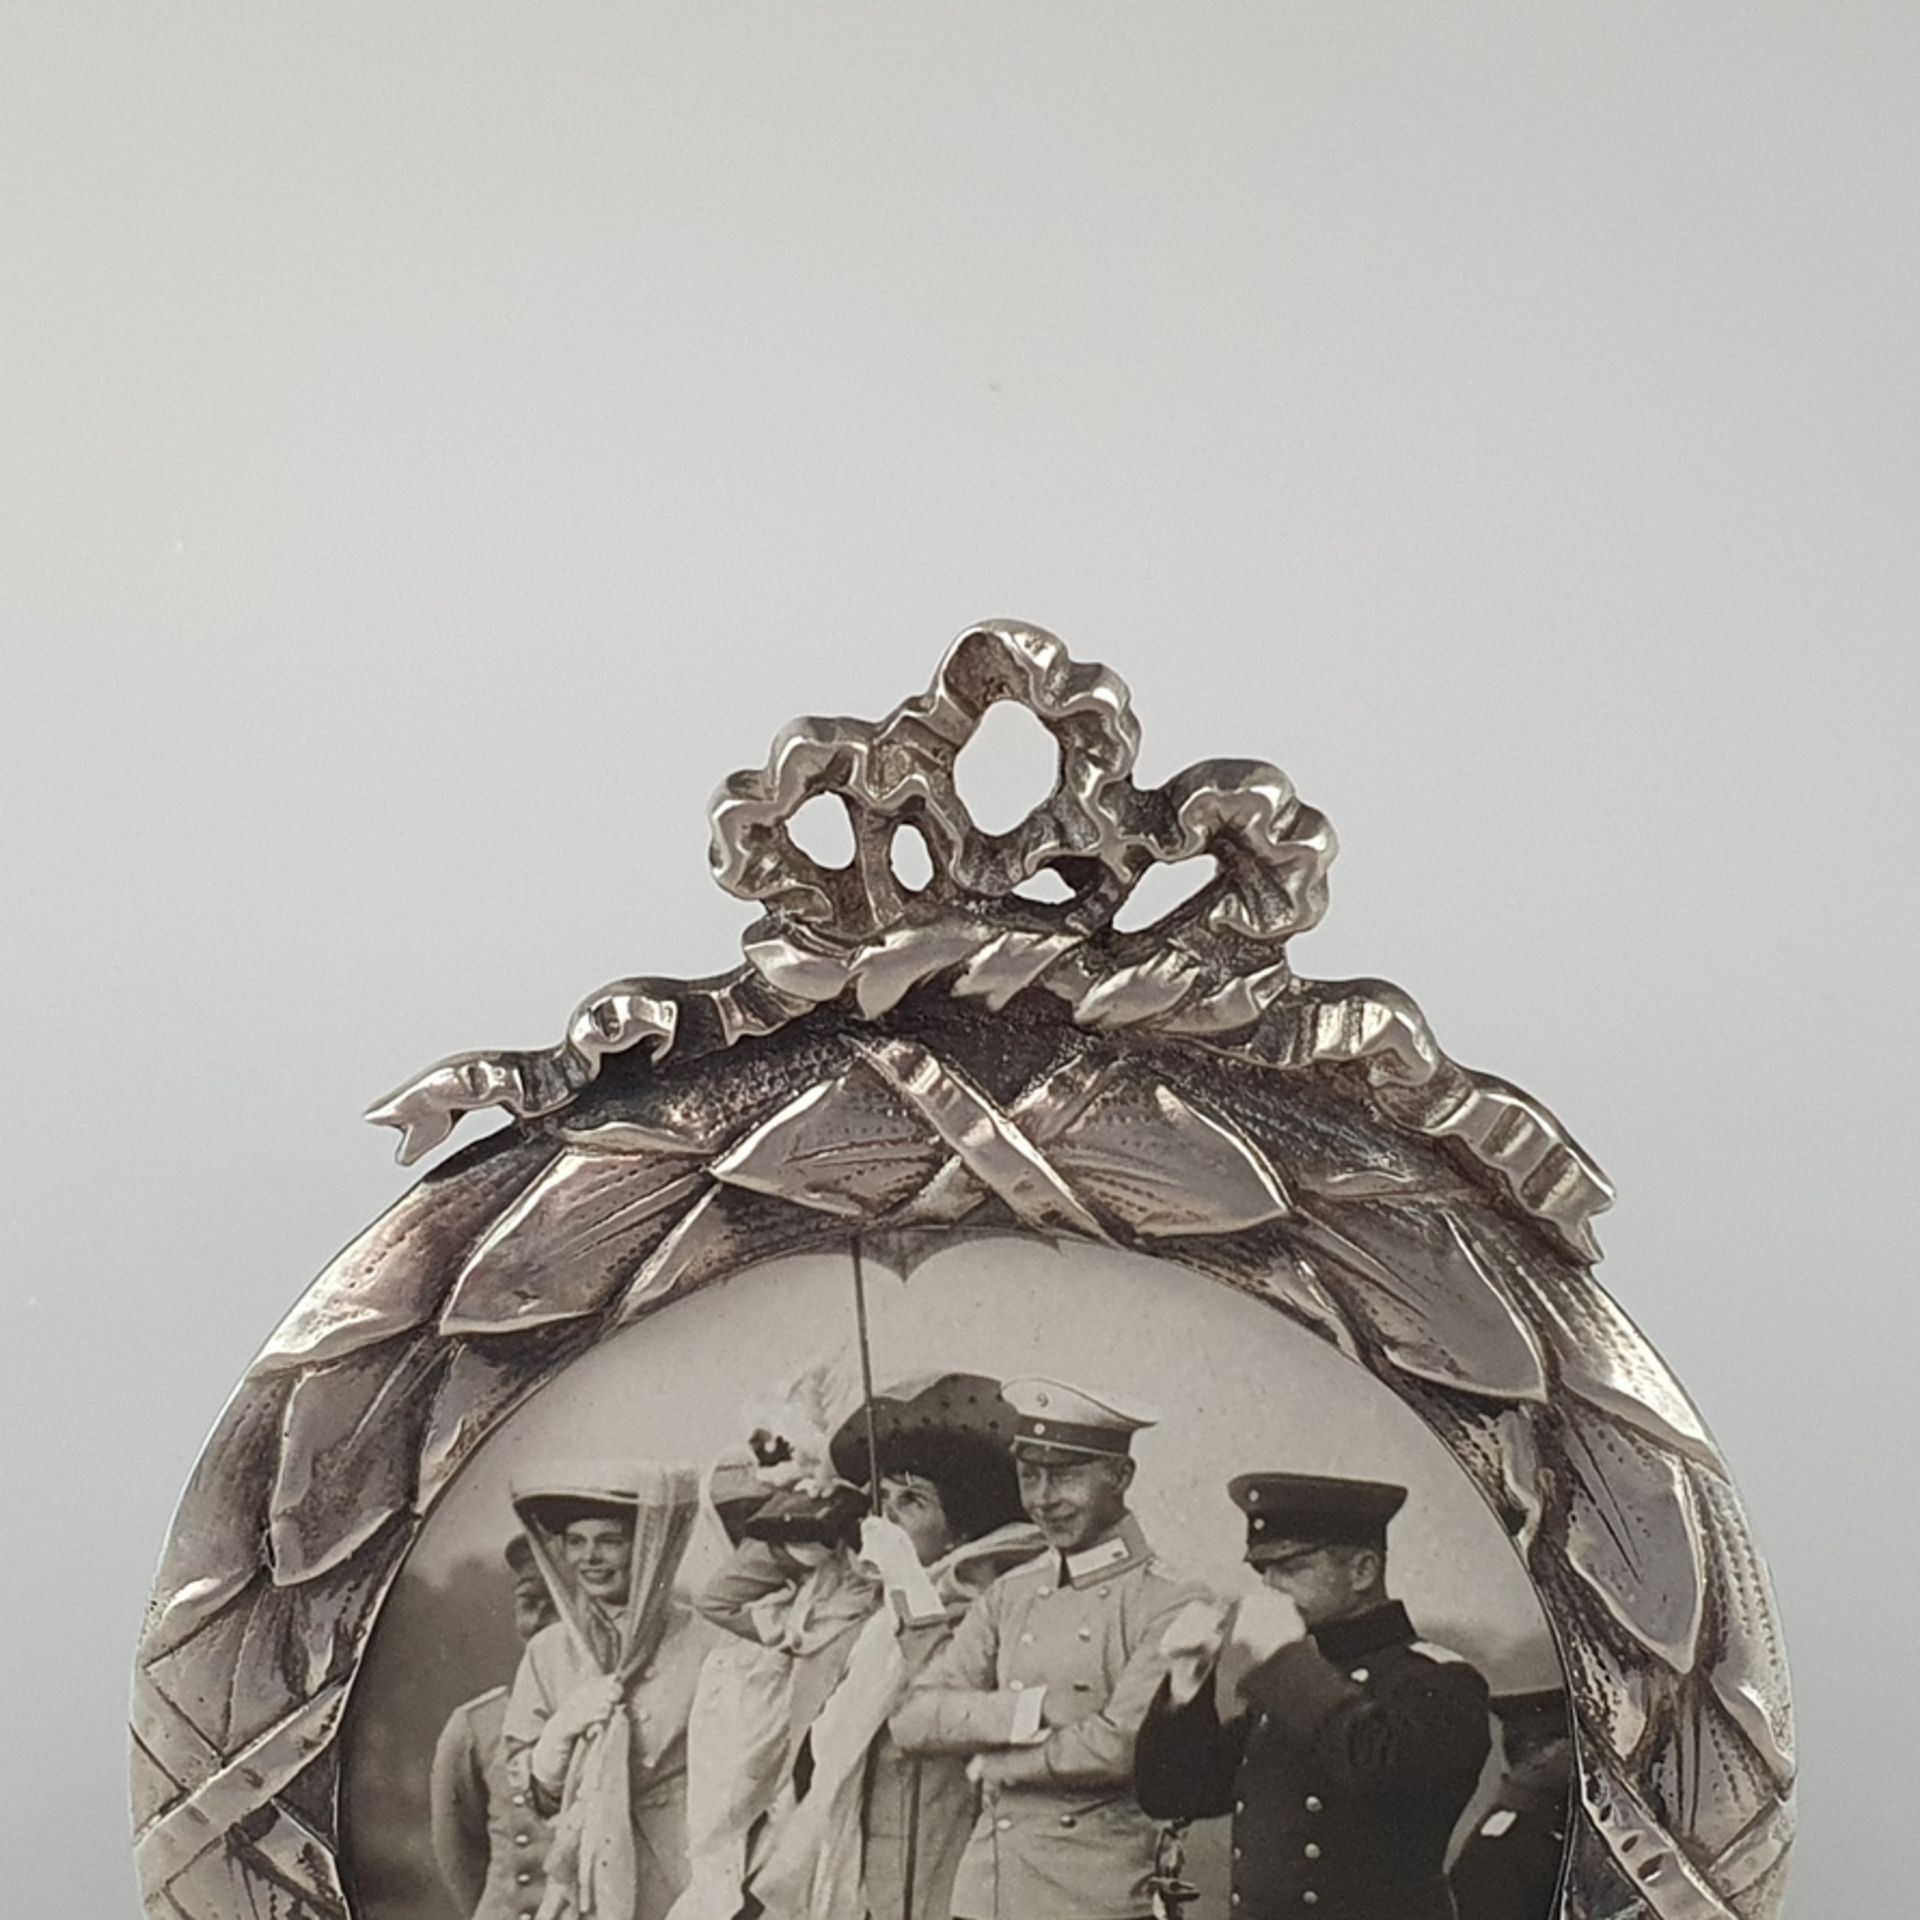 Miniatur-Standrahmen aus Silber - deutsch, nach 1900, Tondo mit Lorbeerfeston als Rahmenleiste, Bek - Bild 2 aus 5